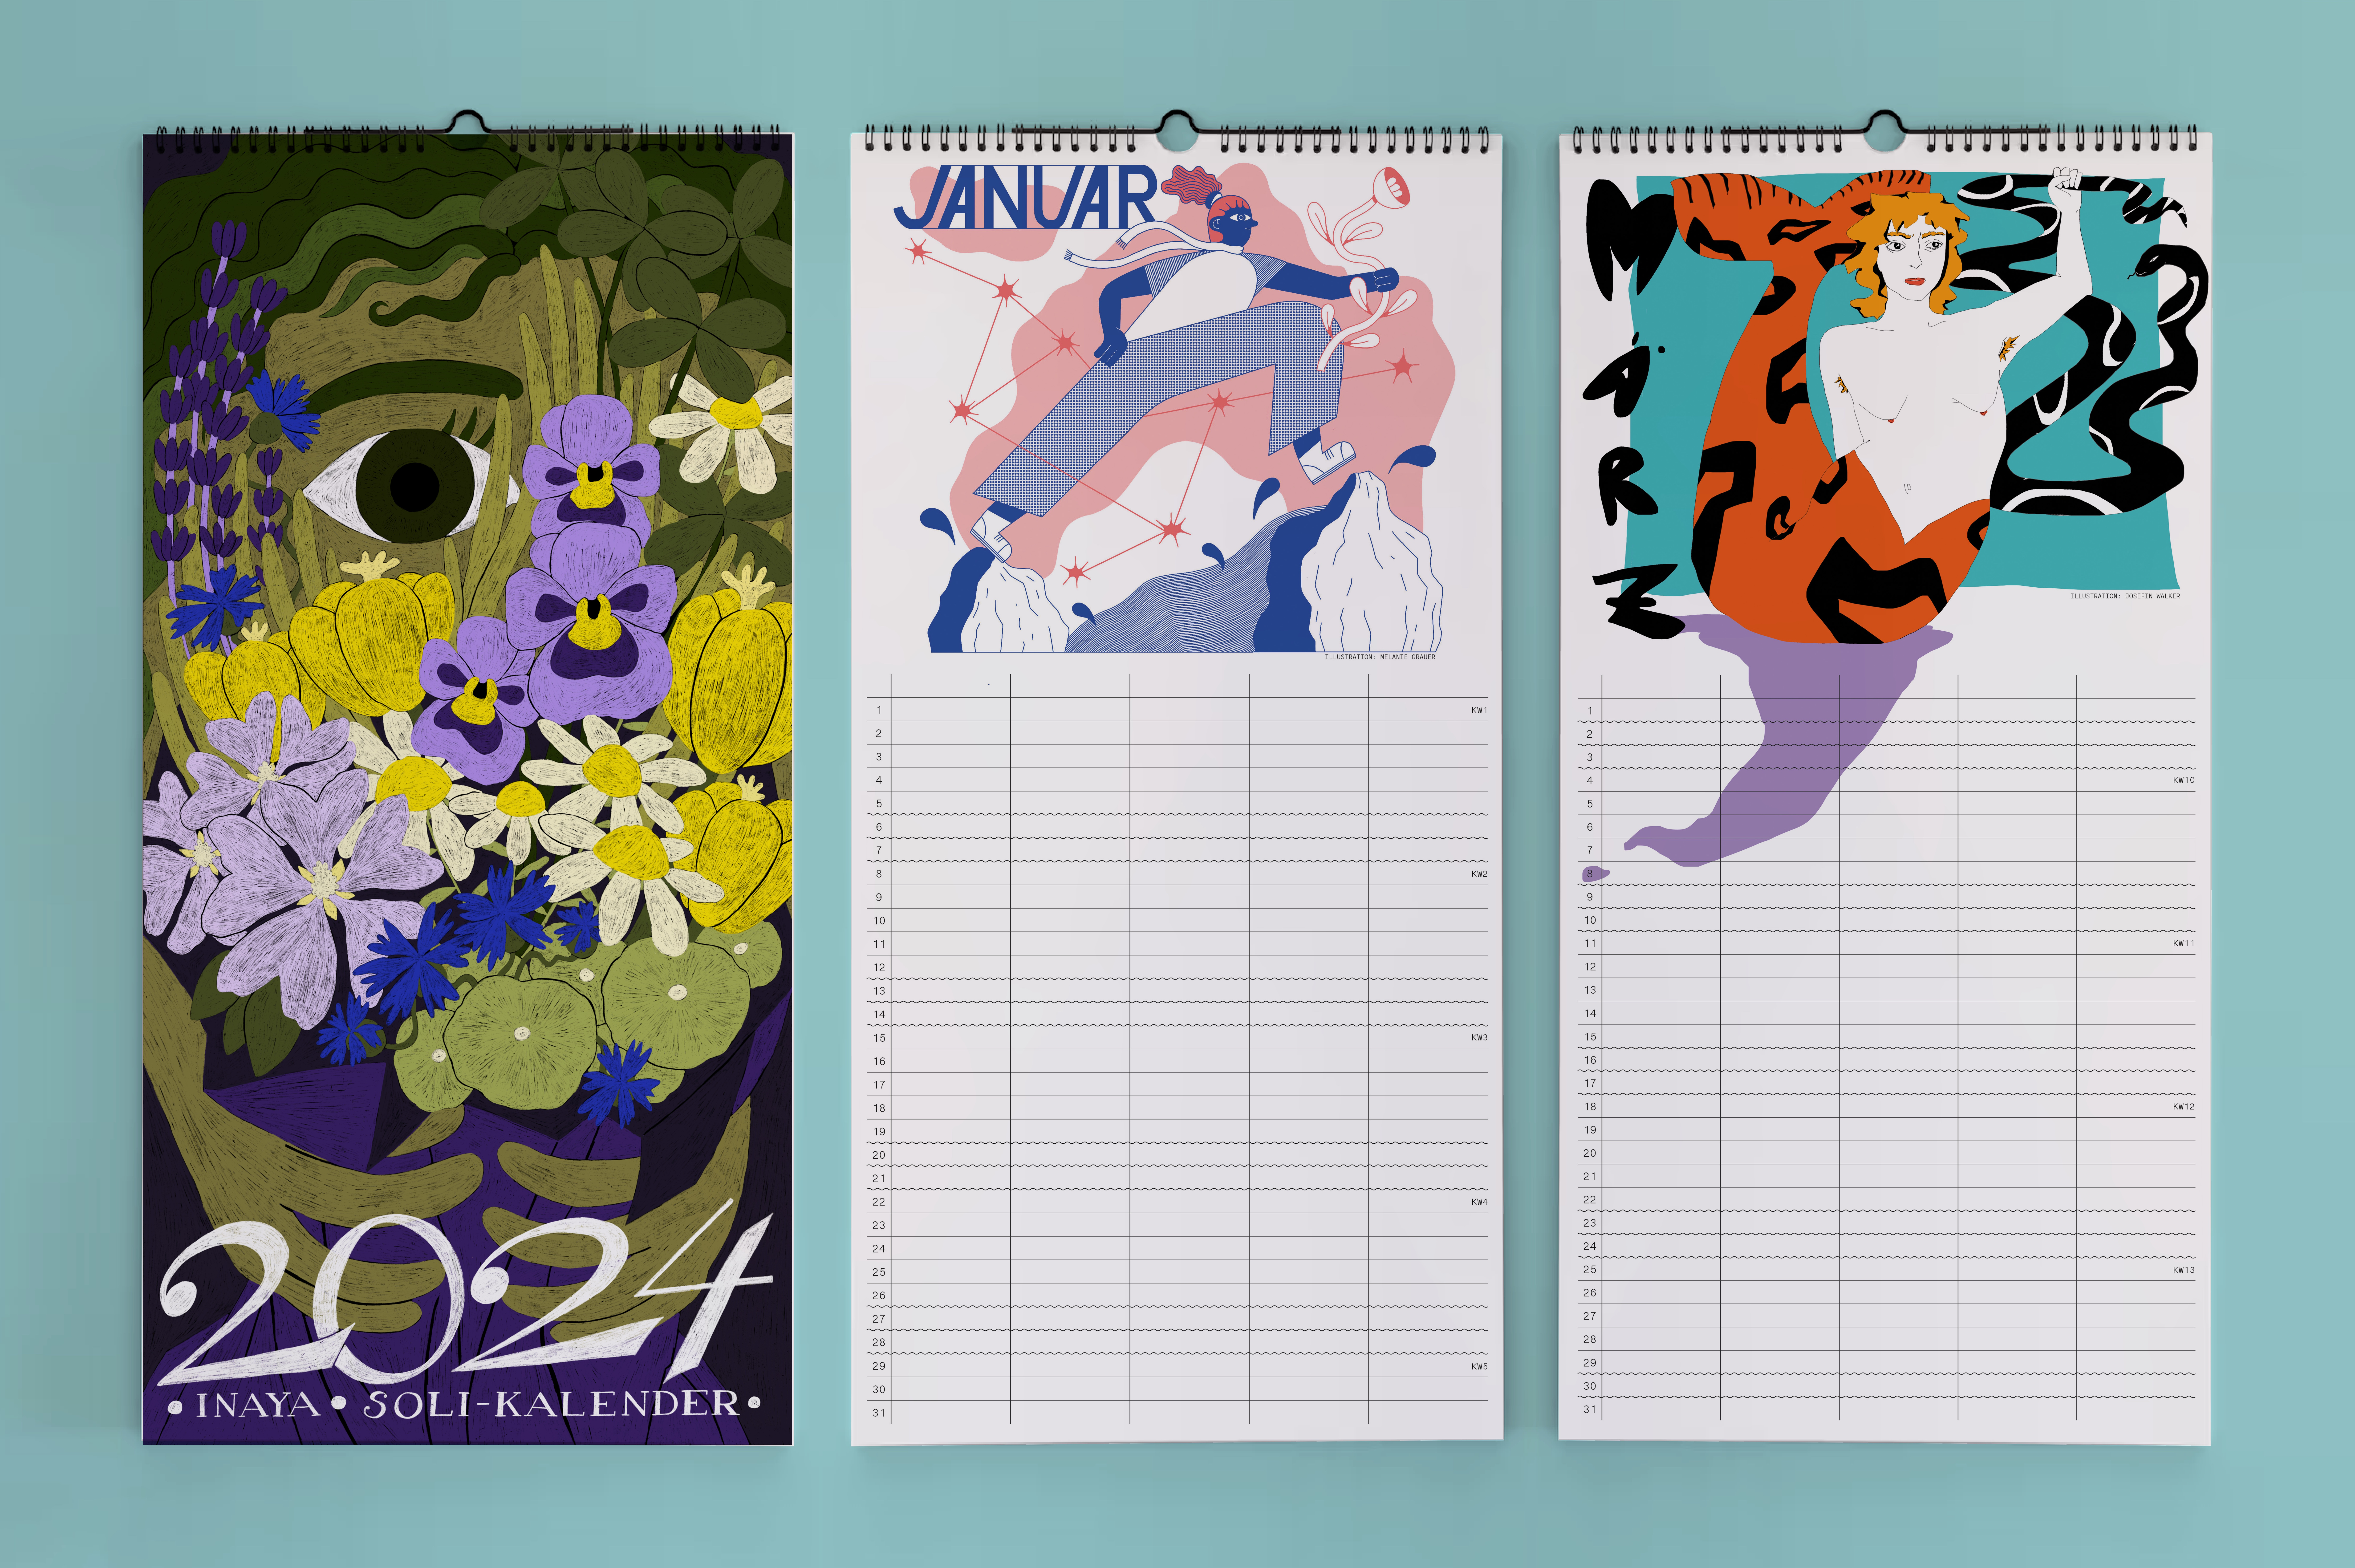 Die Titelseite und zwei Kalenderblätter des Inaya Soli-Kalenders